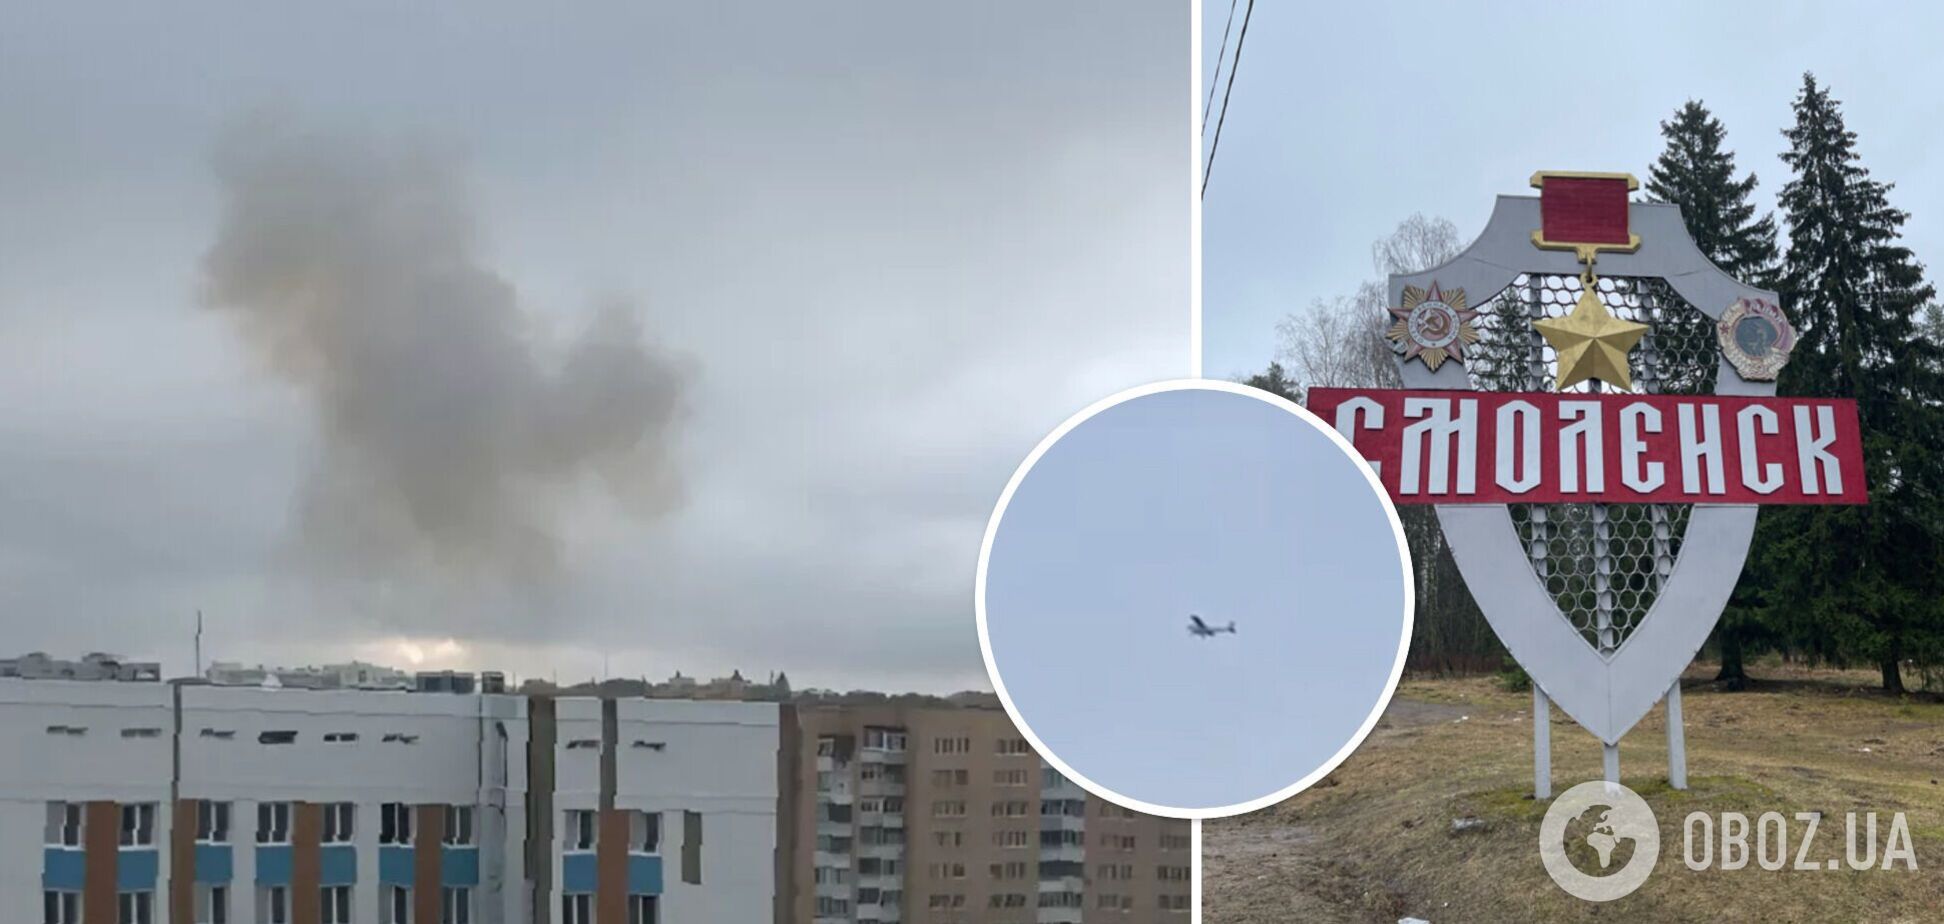 'Аж будинок струснуло': в Смоленську поскаржилися на вибухи, пожежники помчали в район авіазаводу